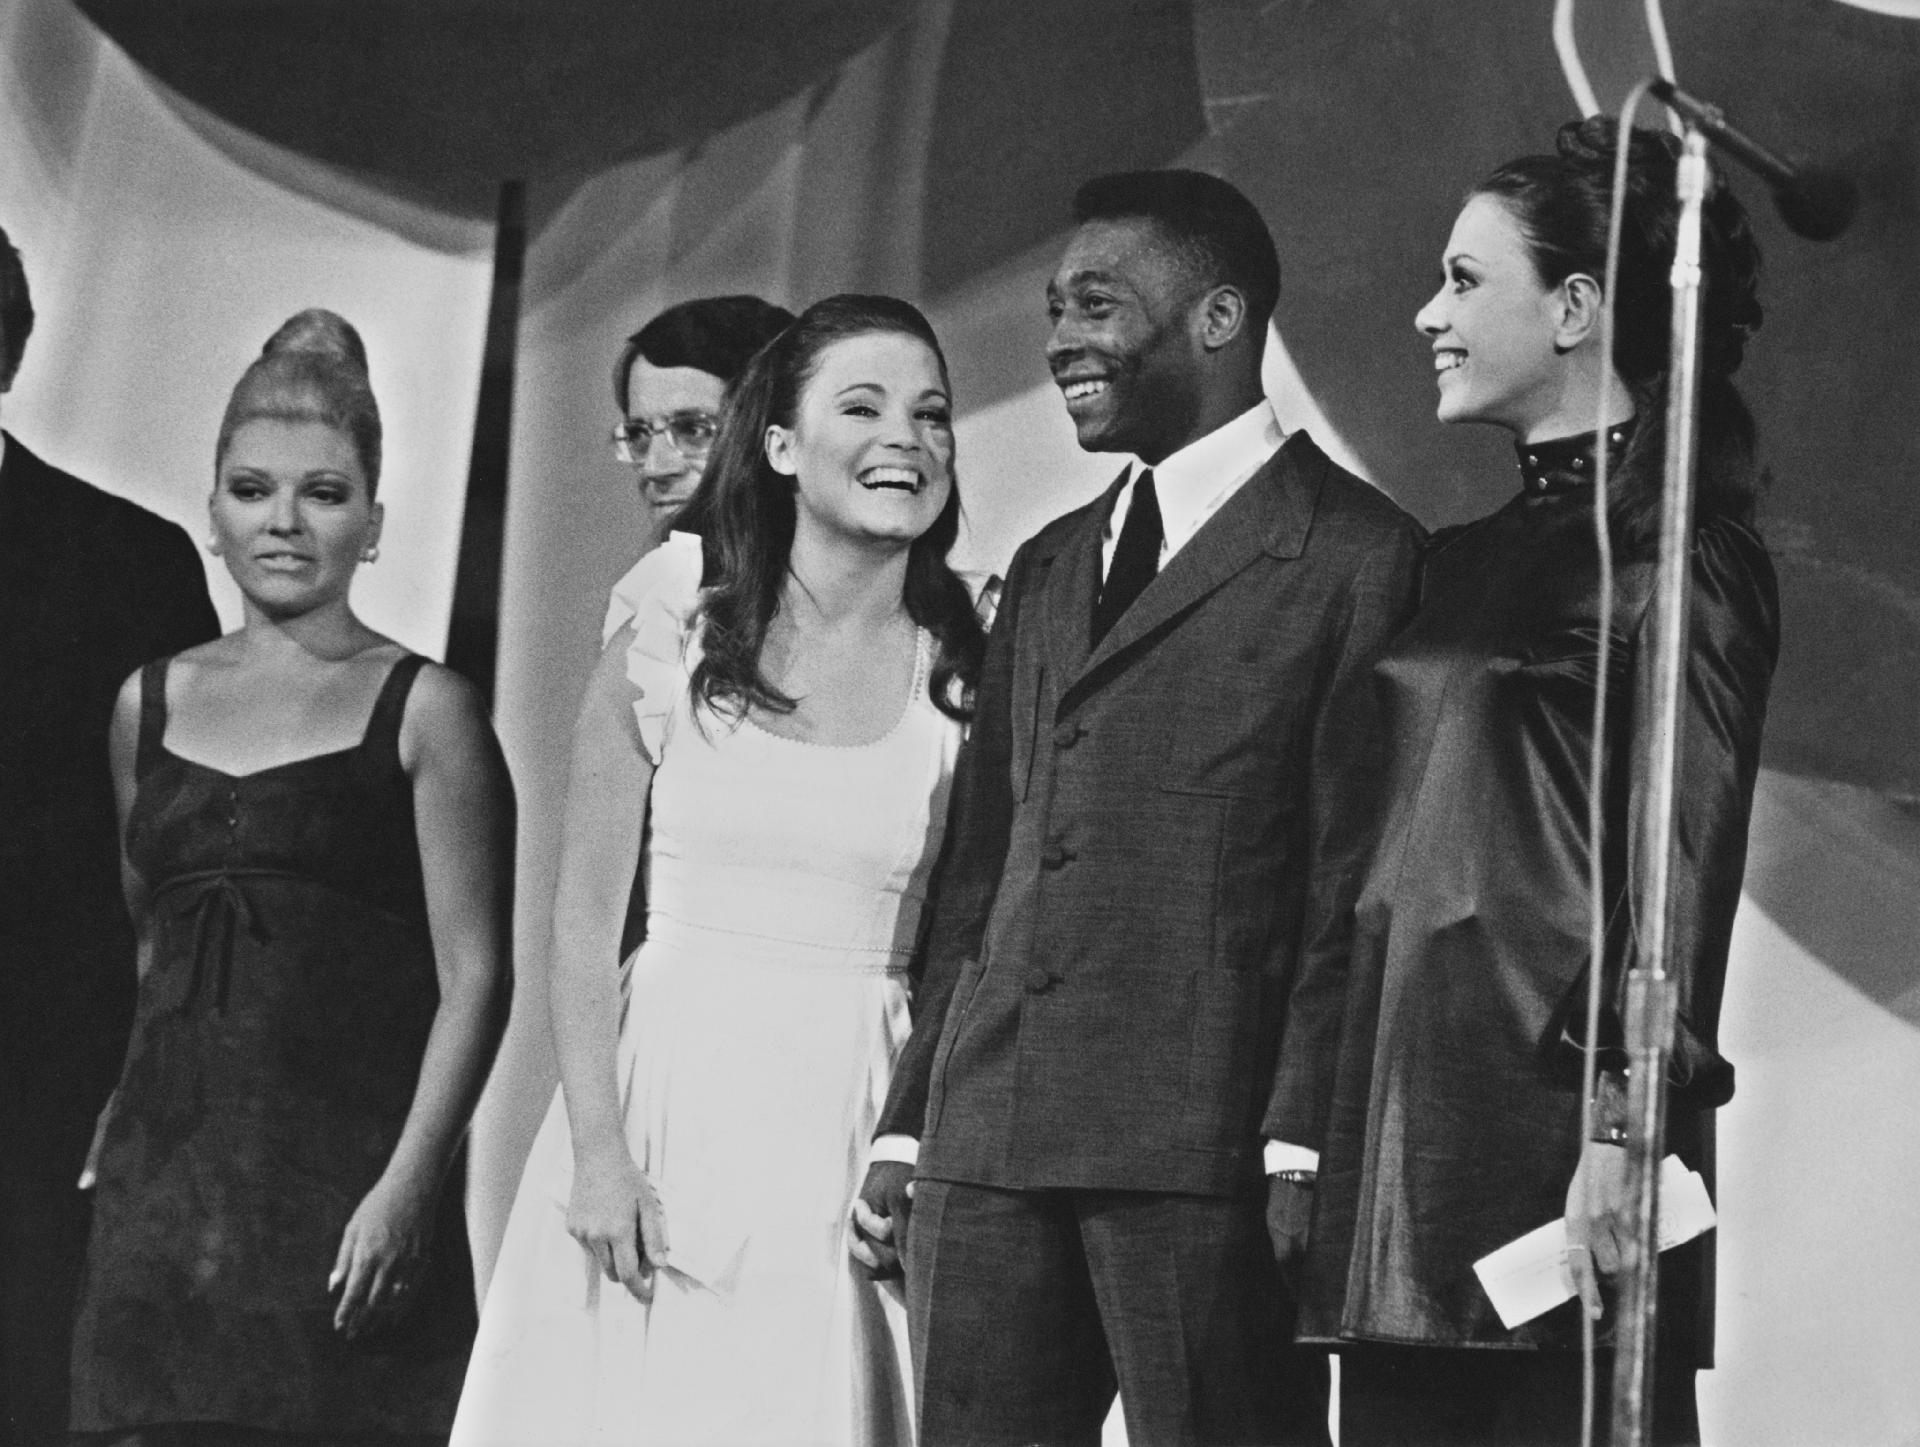 01.jan.1969 - Pelé marcou presença em um programa de variedades na TV. - Pictorial Parade